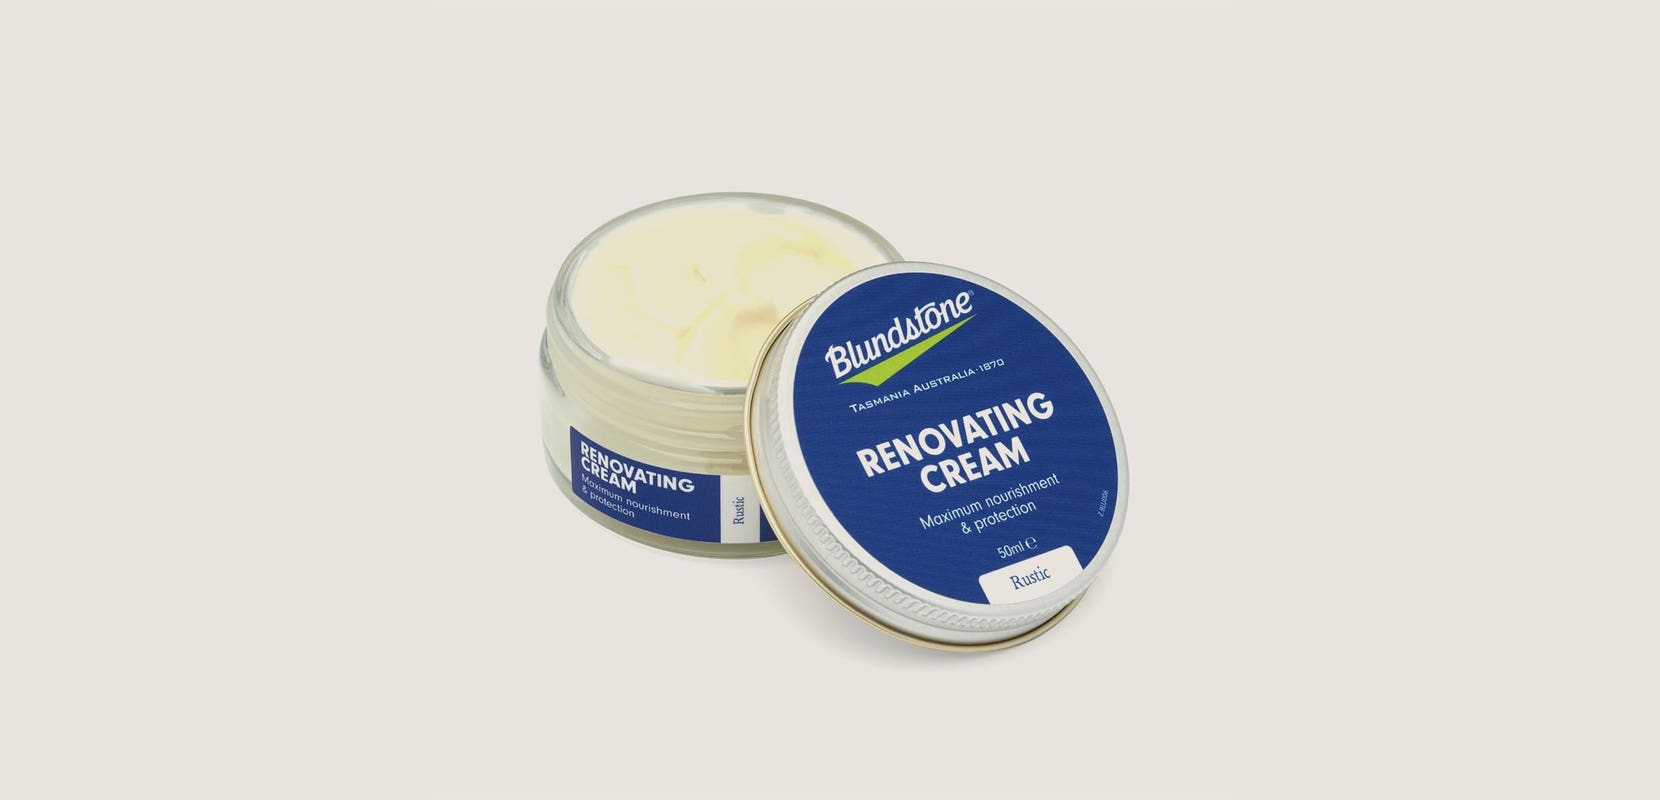 Renovating Cream Rustic